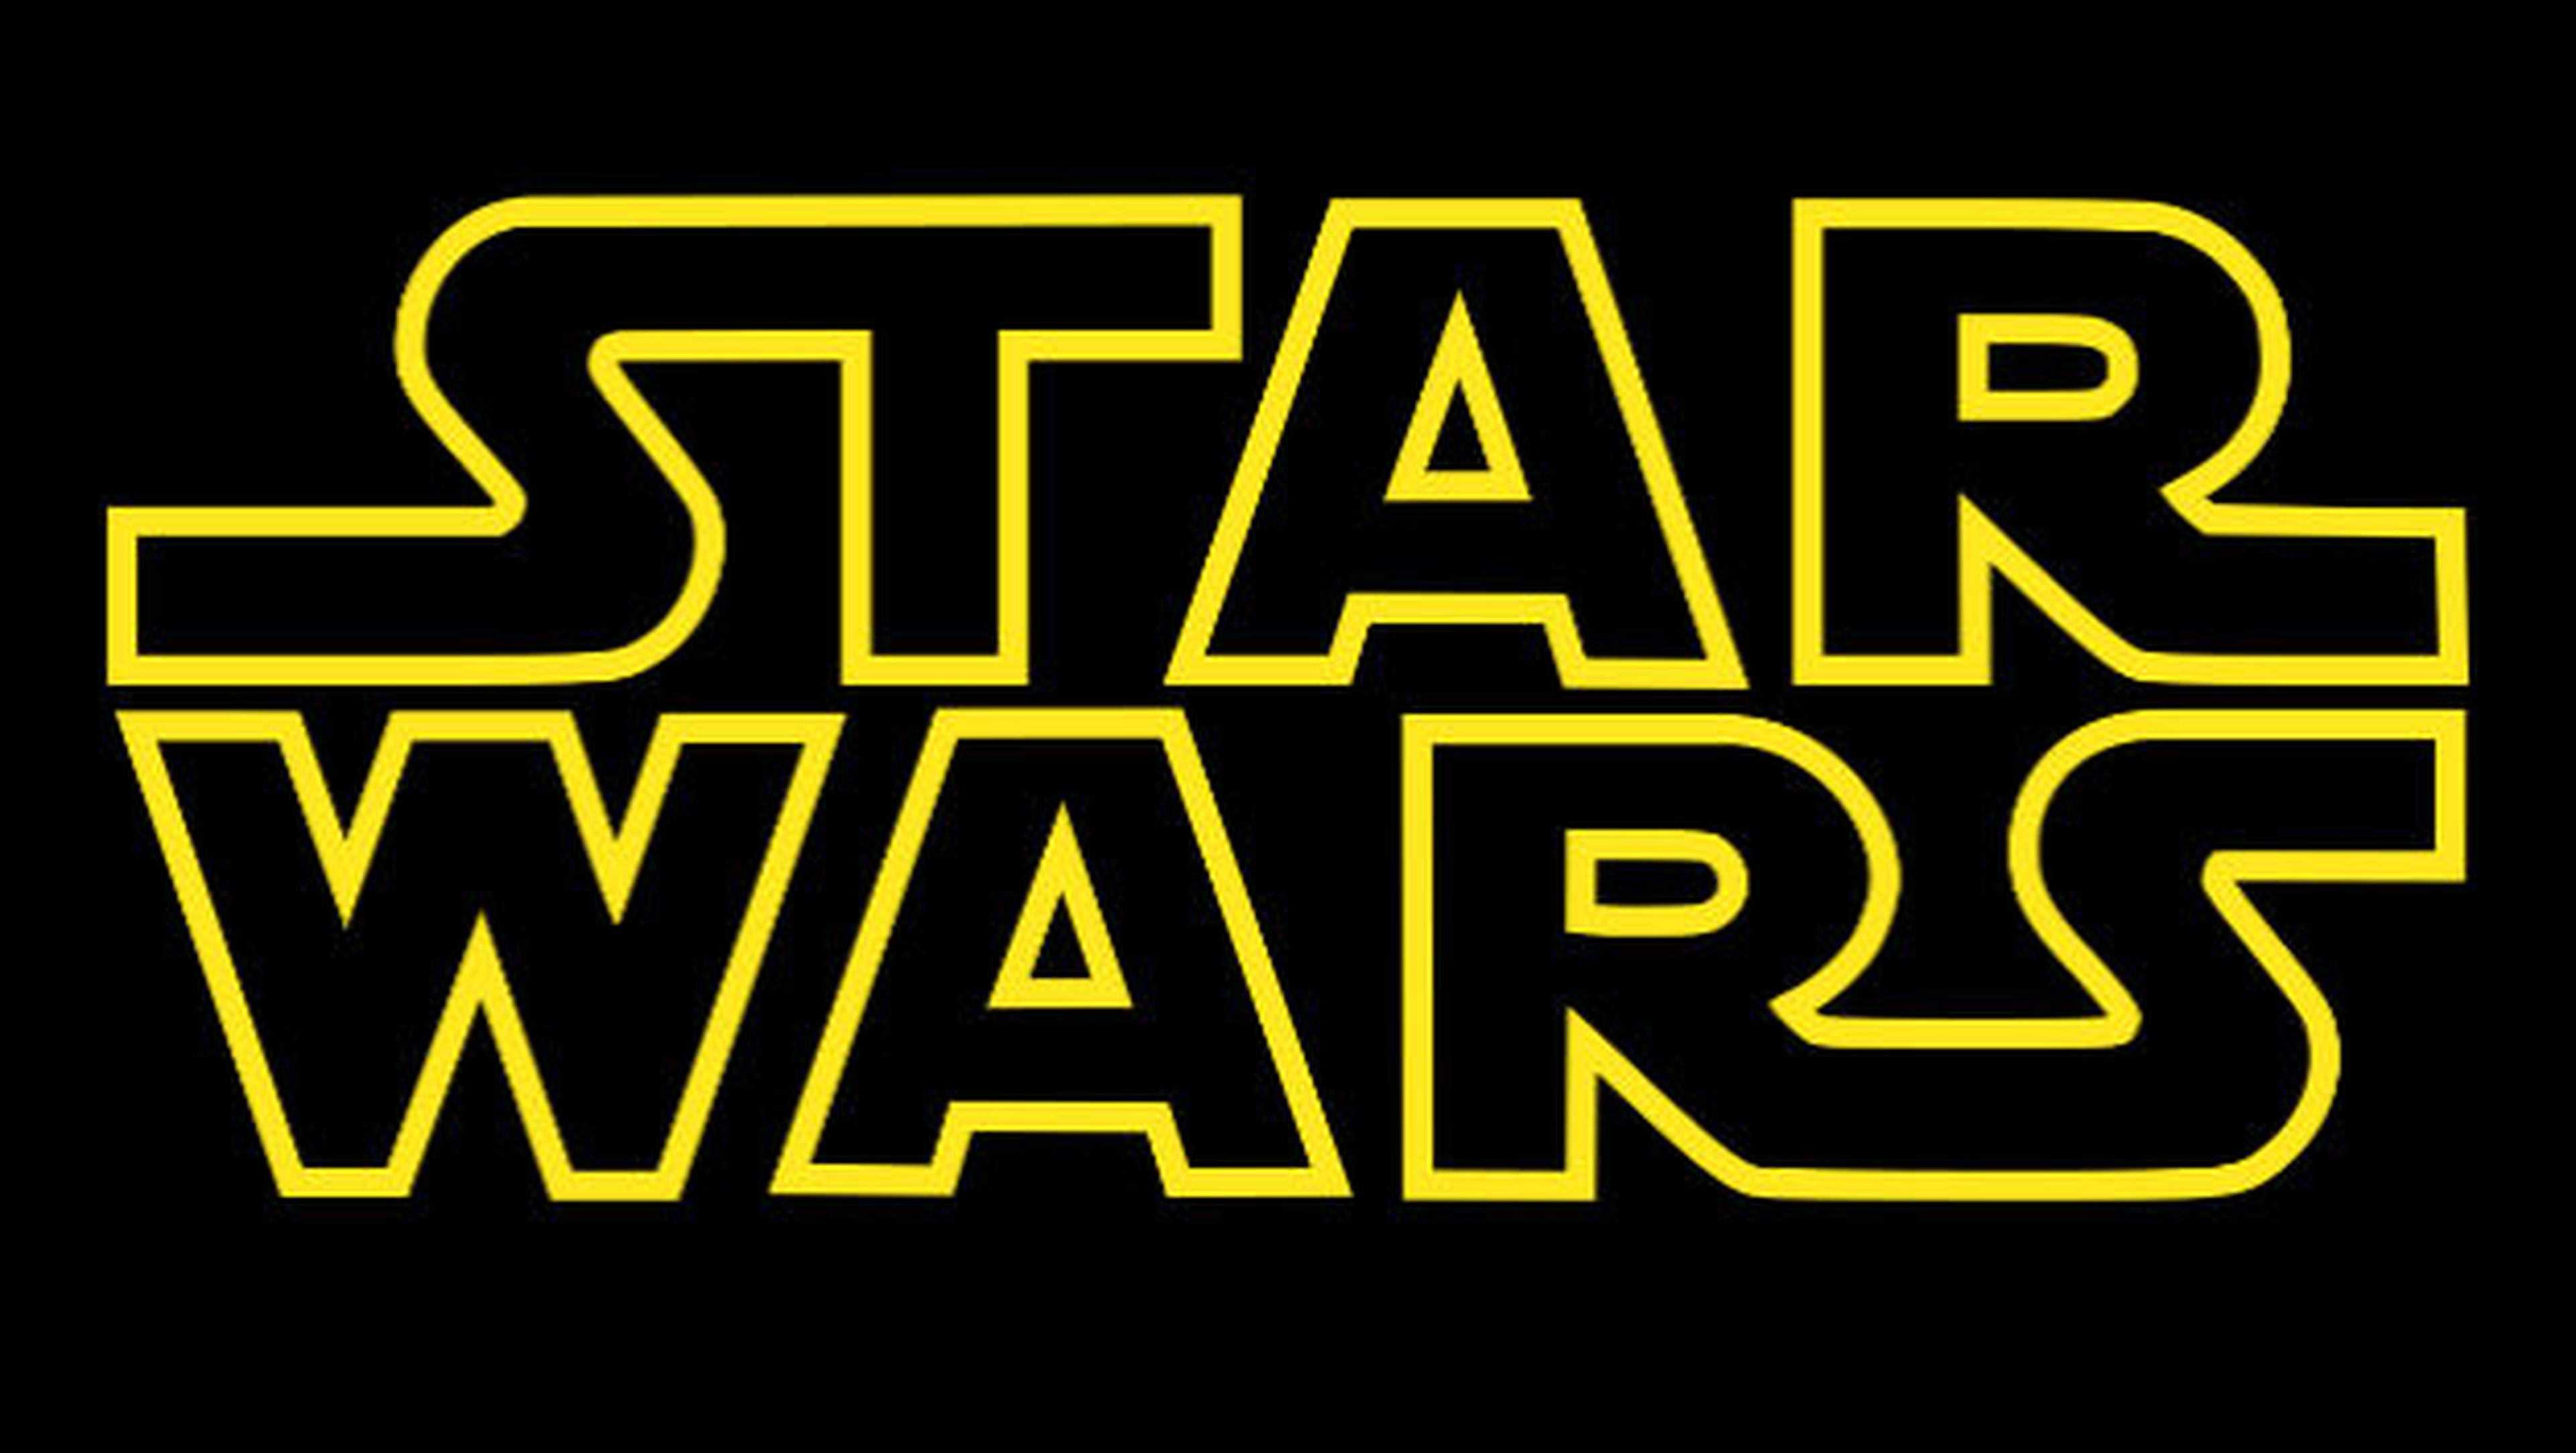 Star Wars hace oficial tres películas más, aún sin fecha de estreno.